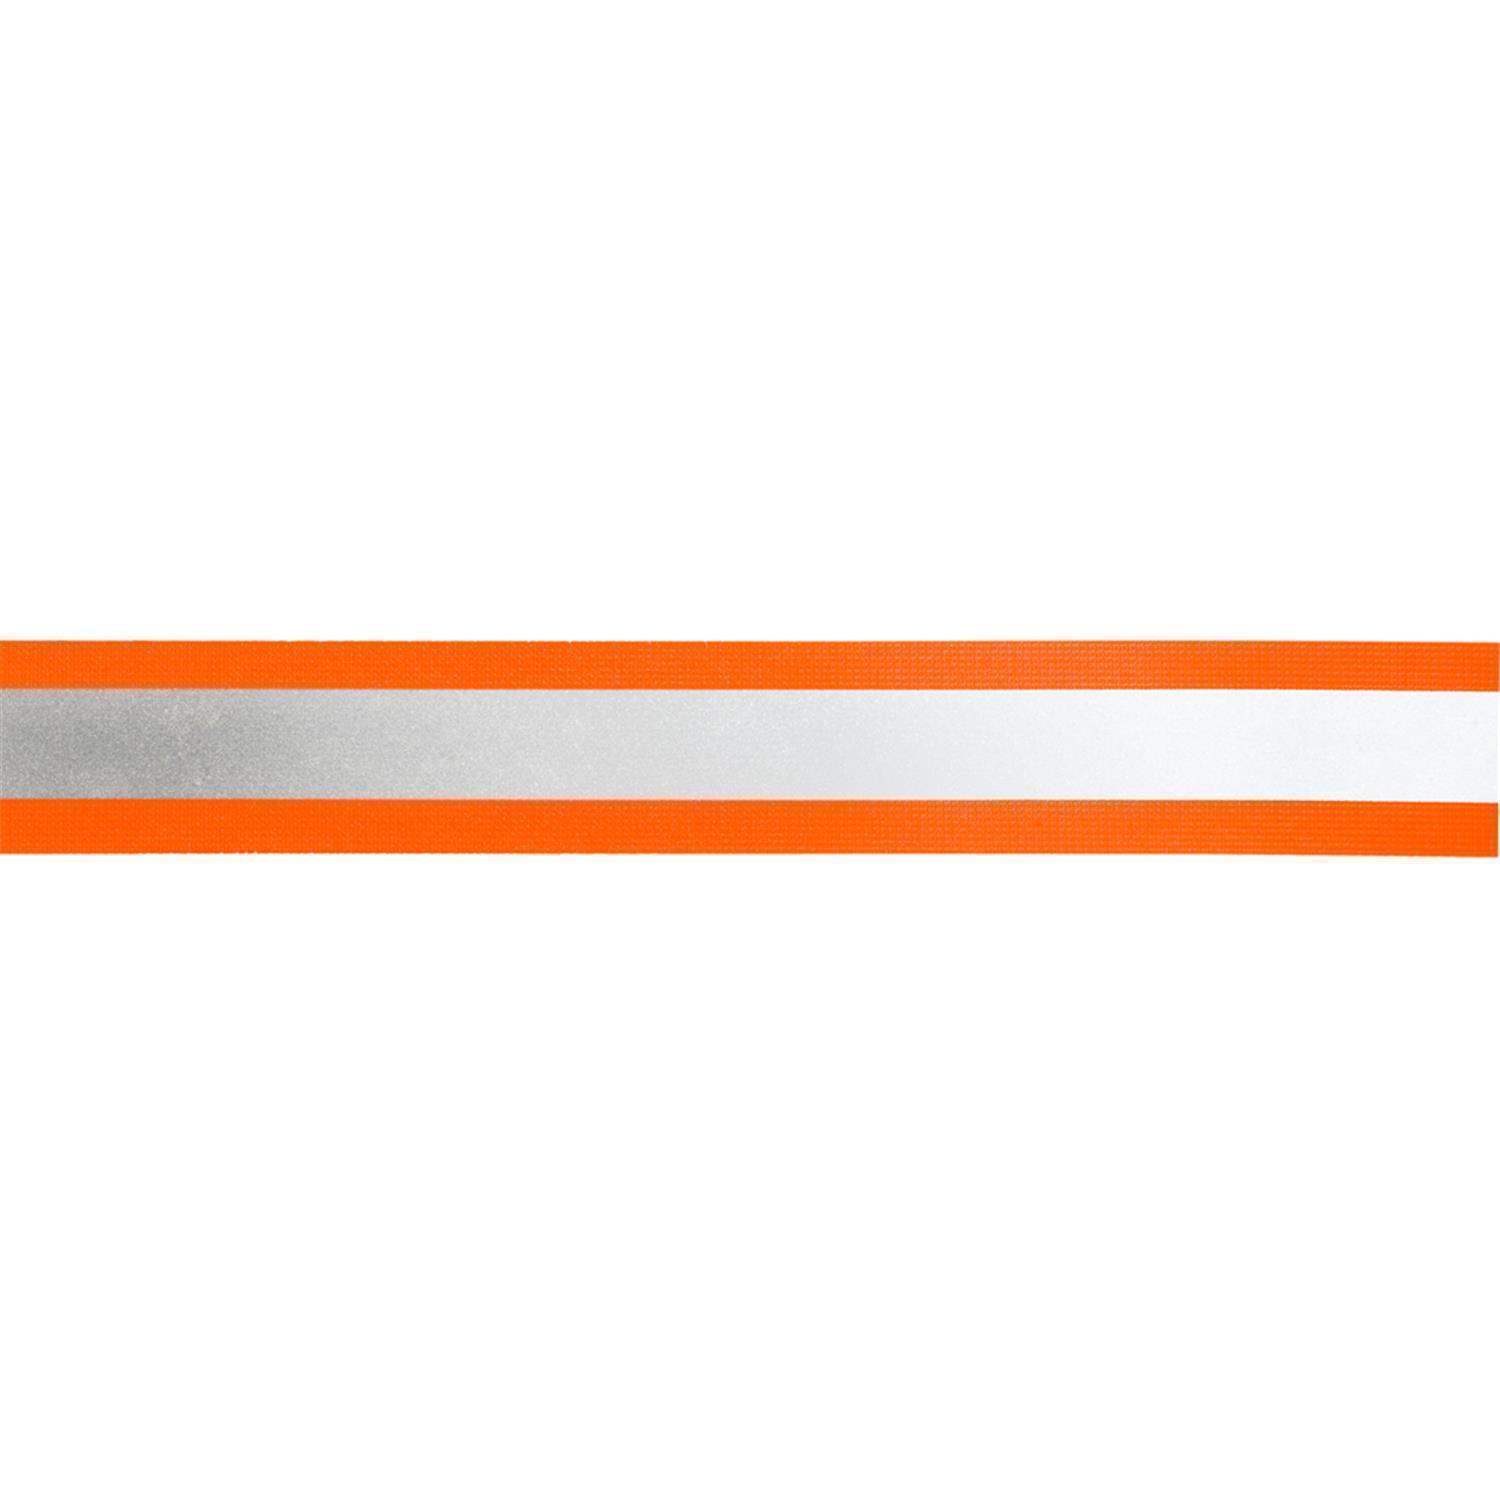 Reflektorband 40mm breit in 2 Farben orange-silber 50 Meter